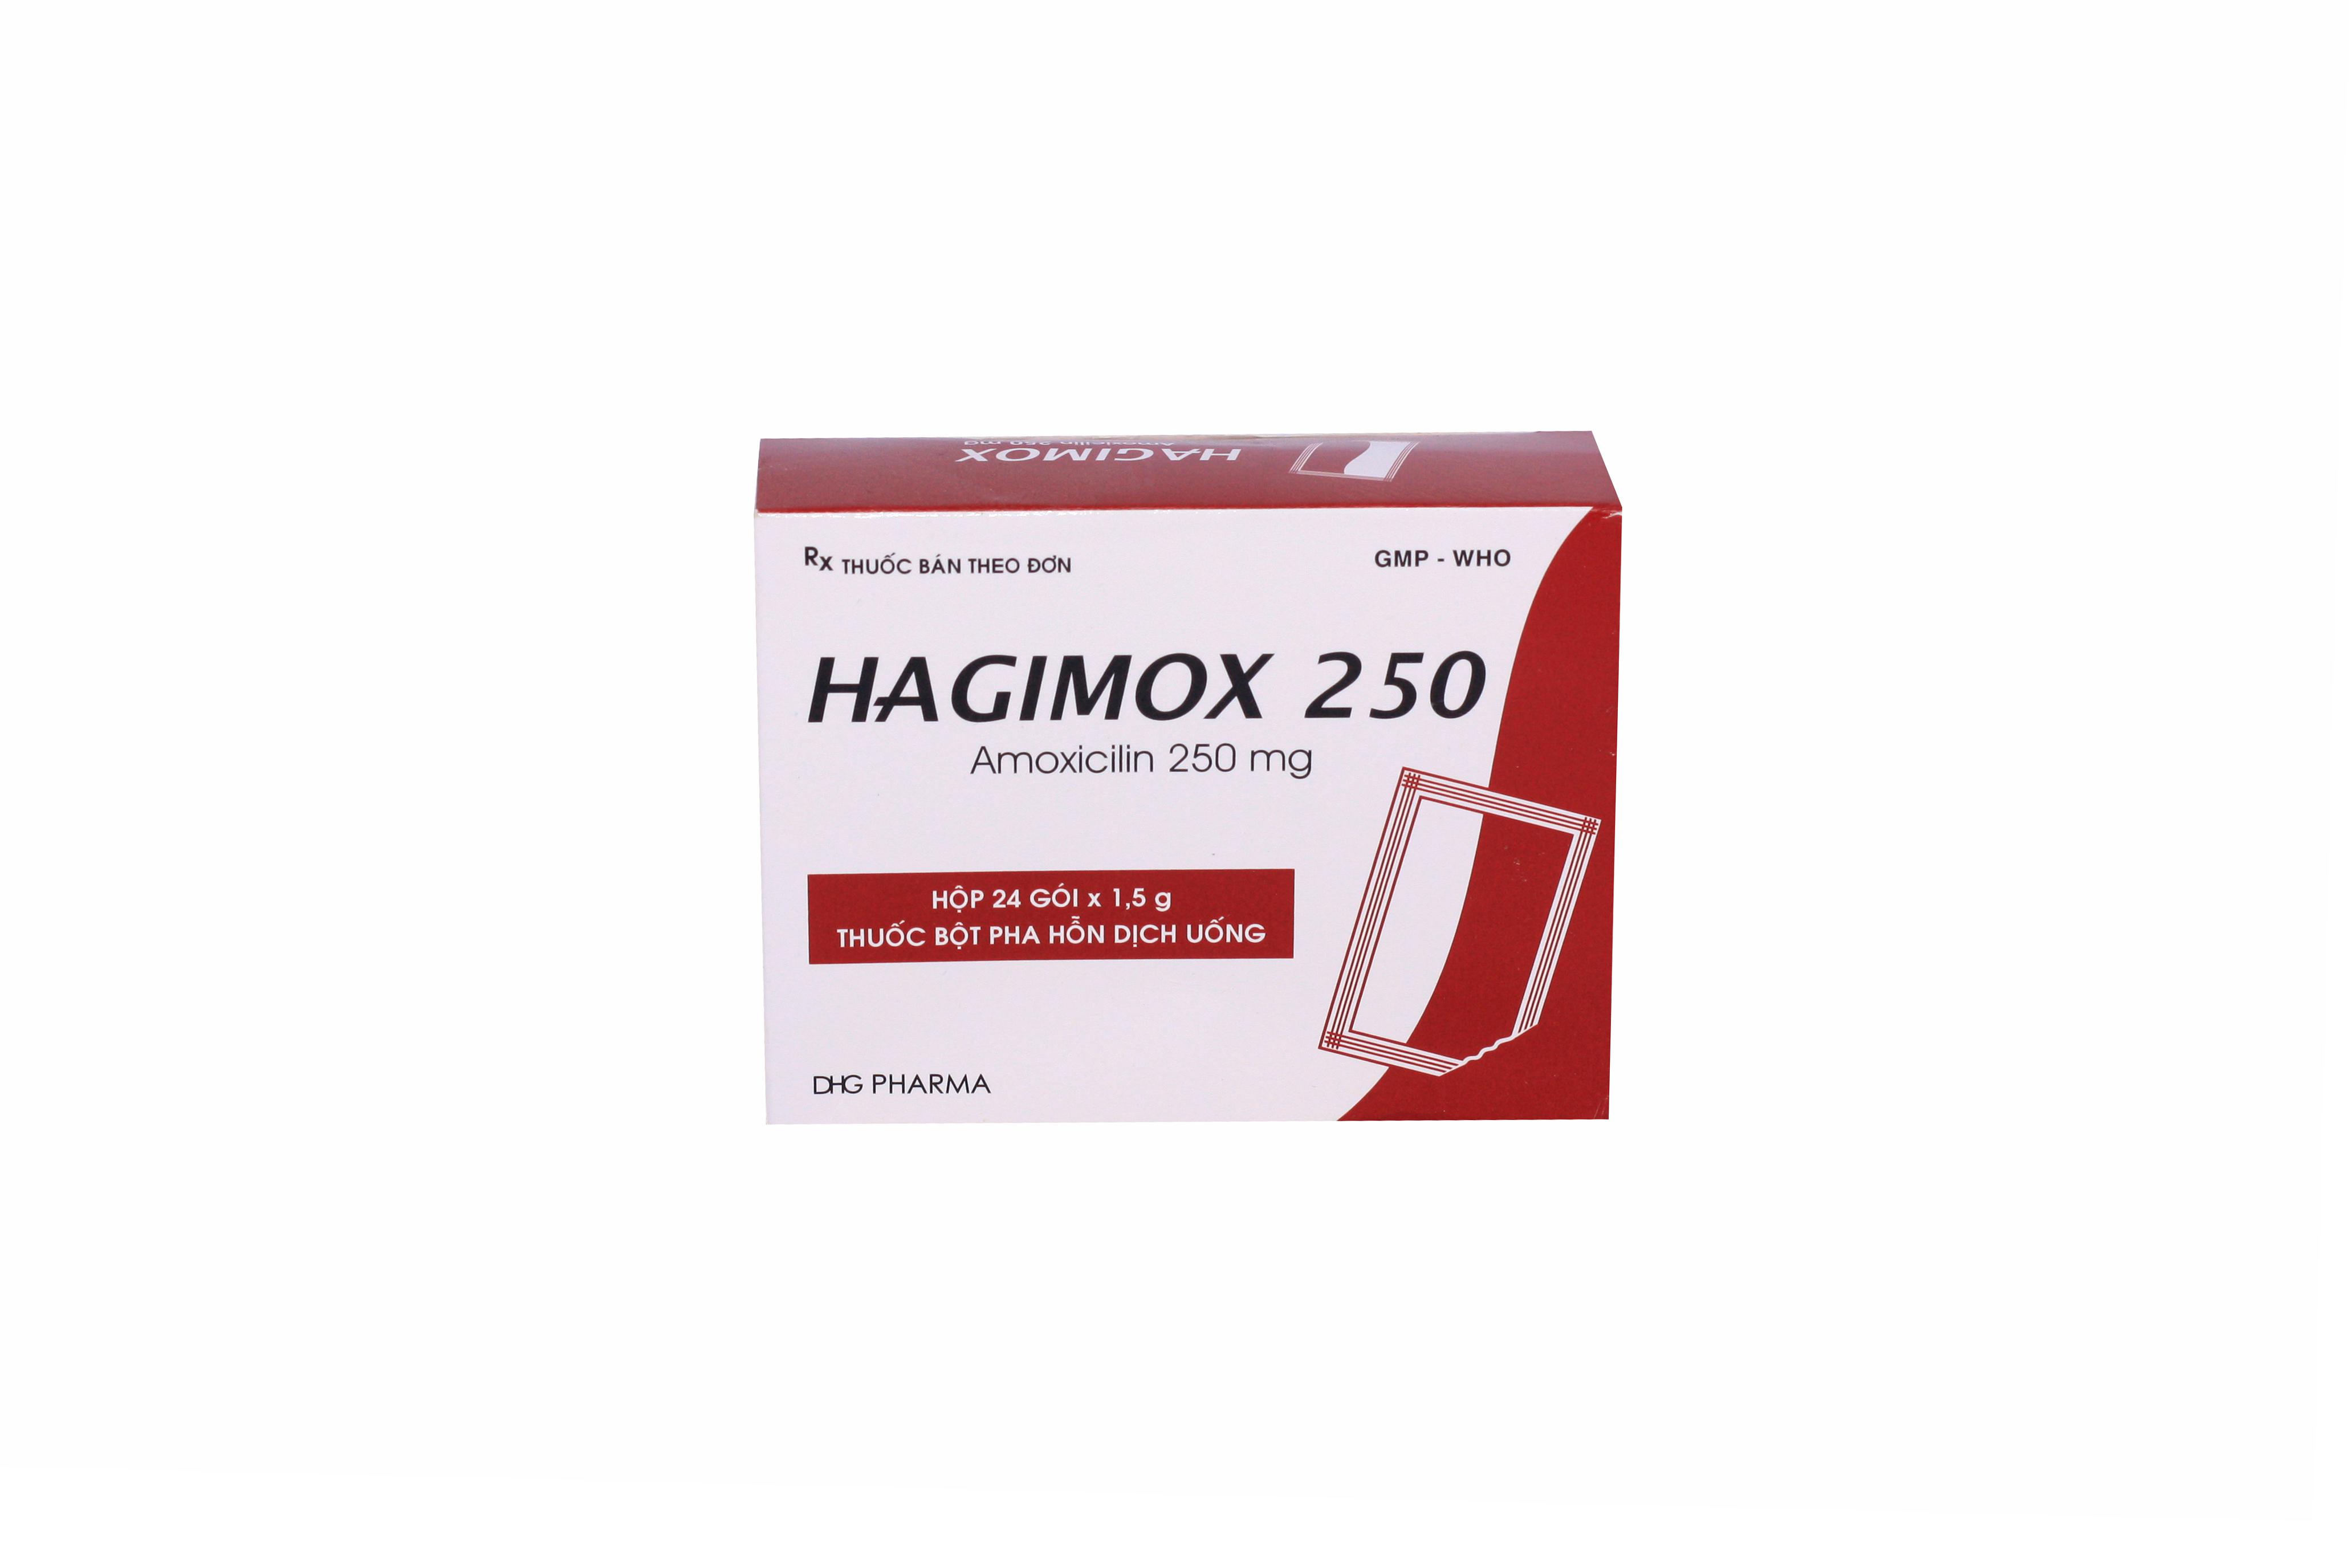 Hagimox 250 (Amoxicillin) DHG Pharma (H/24g)